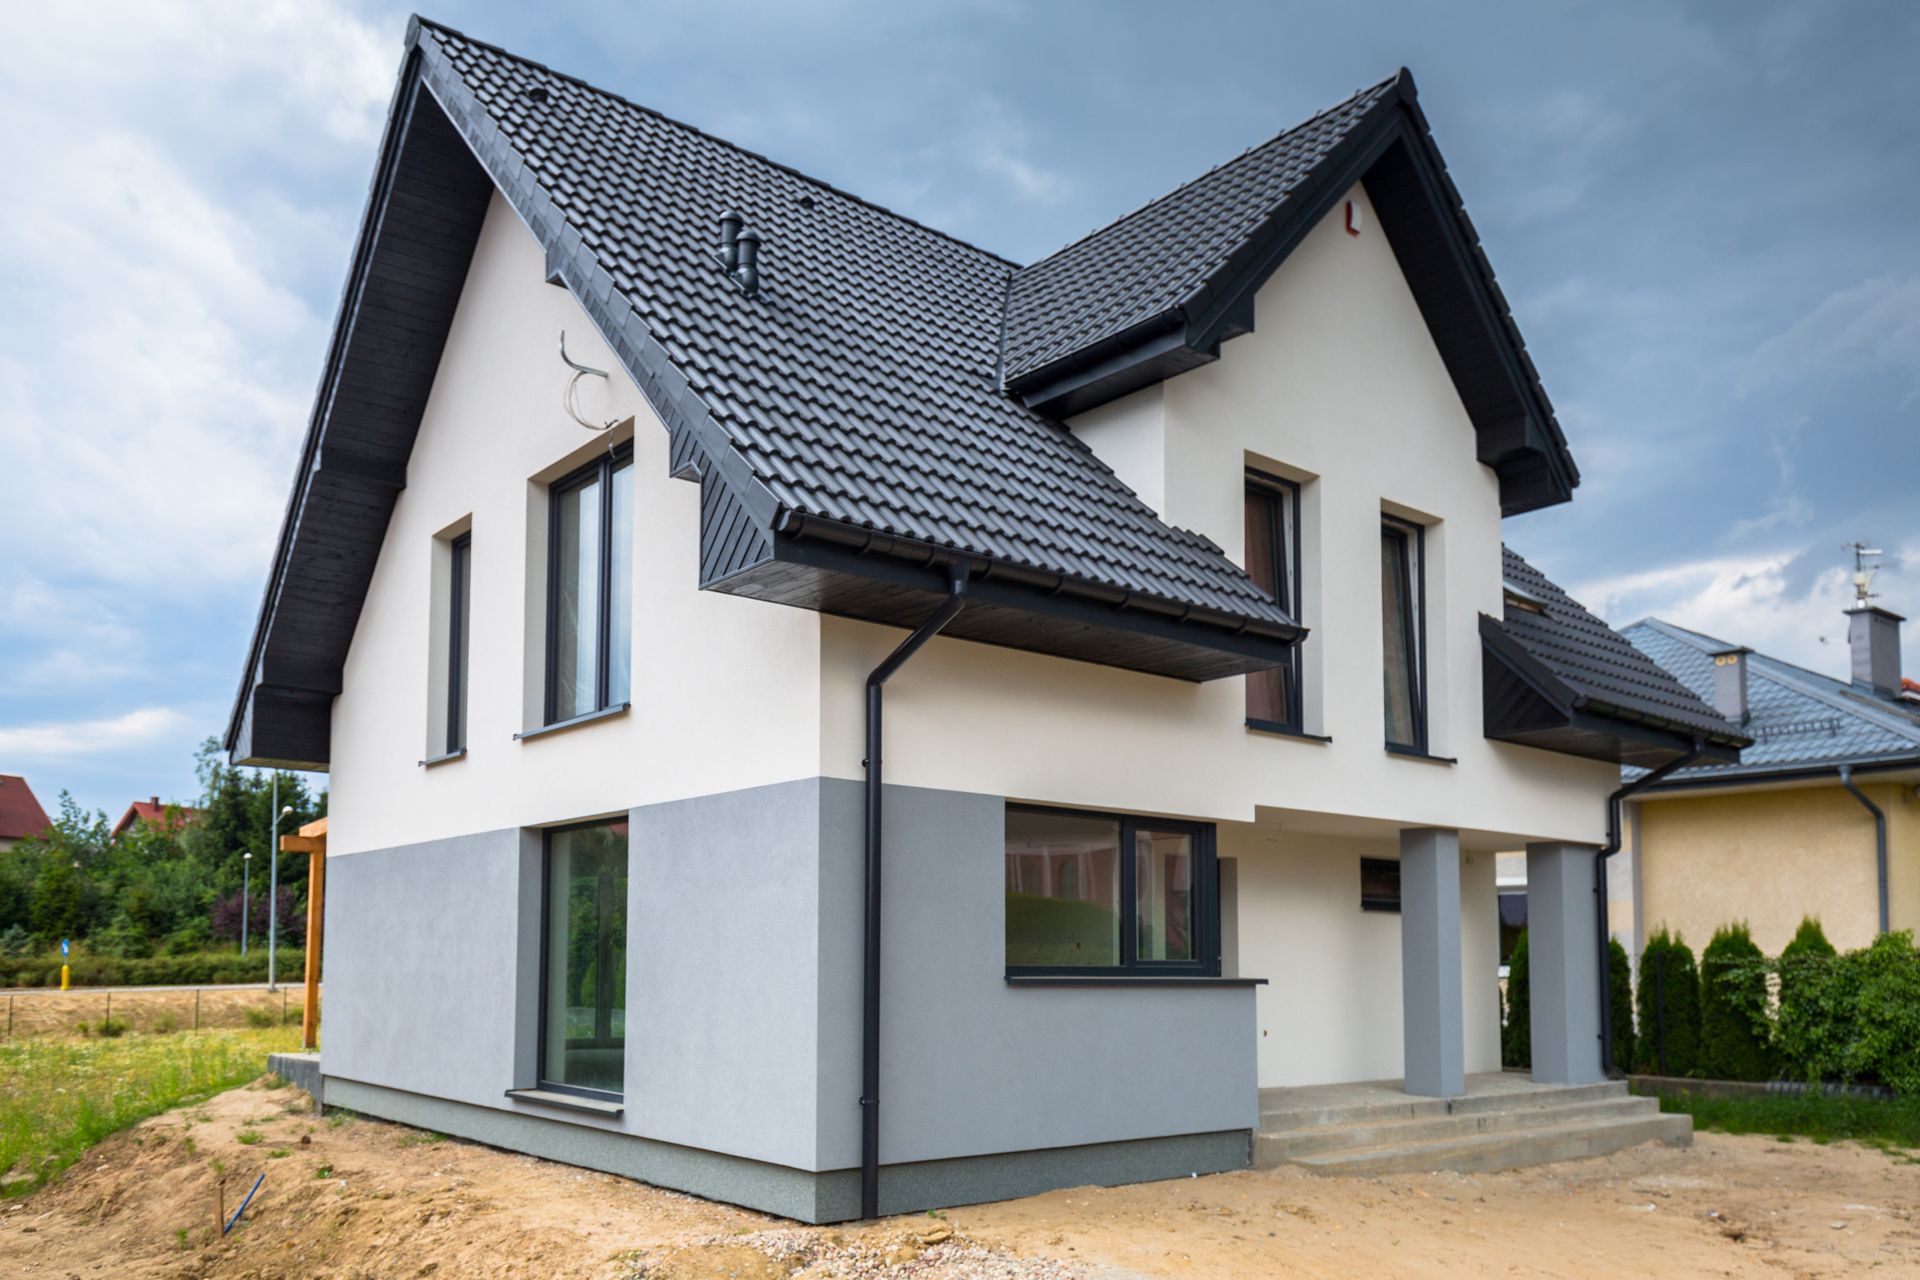 Maison neuve avec façade bicolore grise et blanche